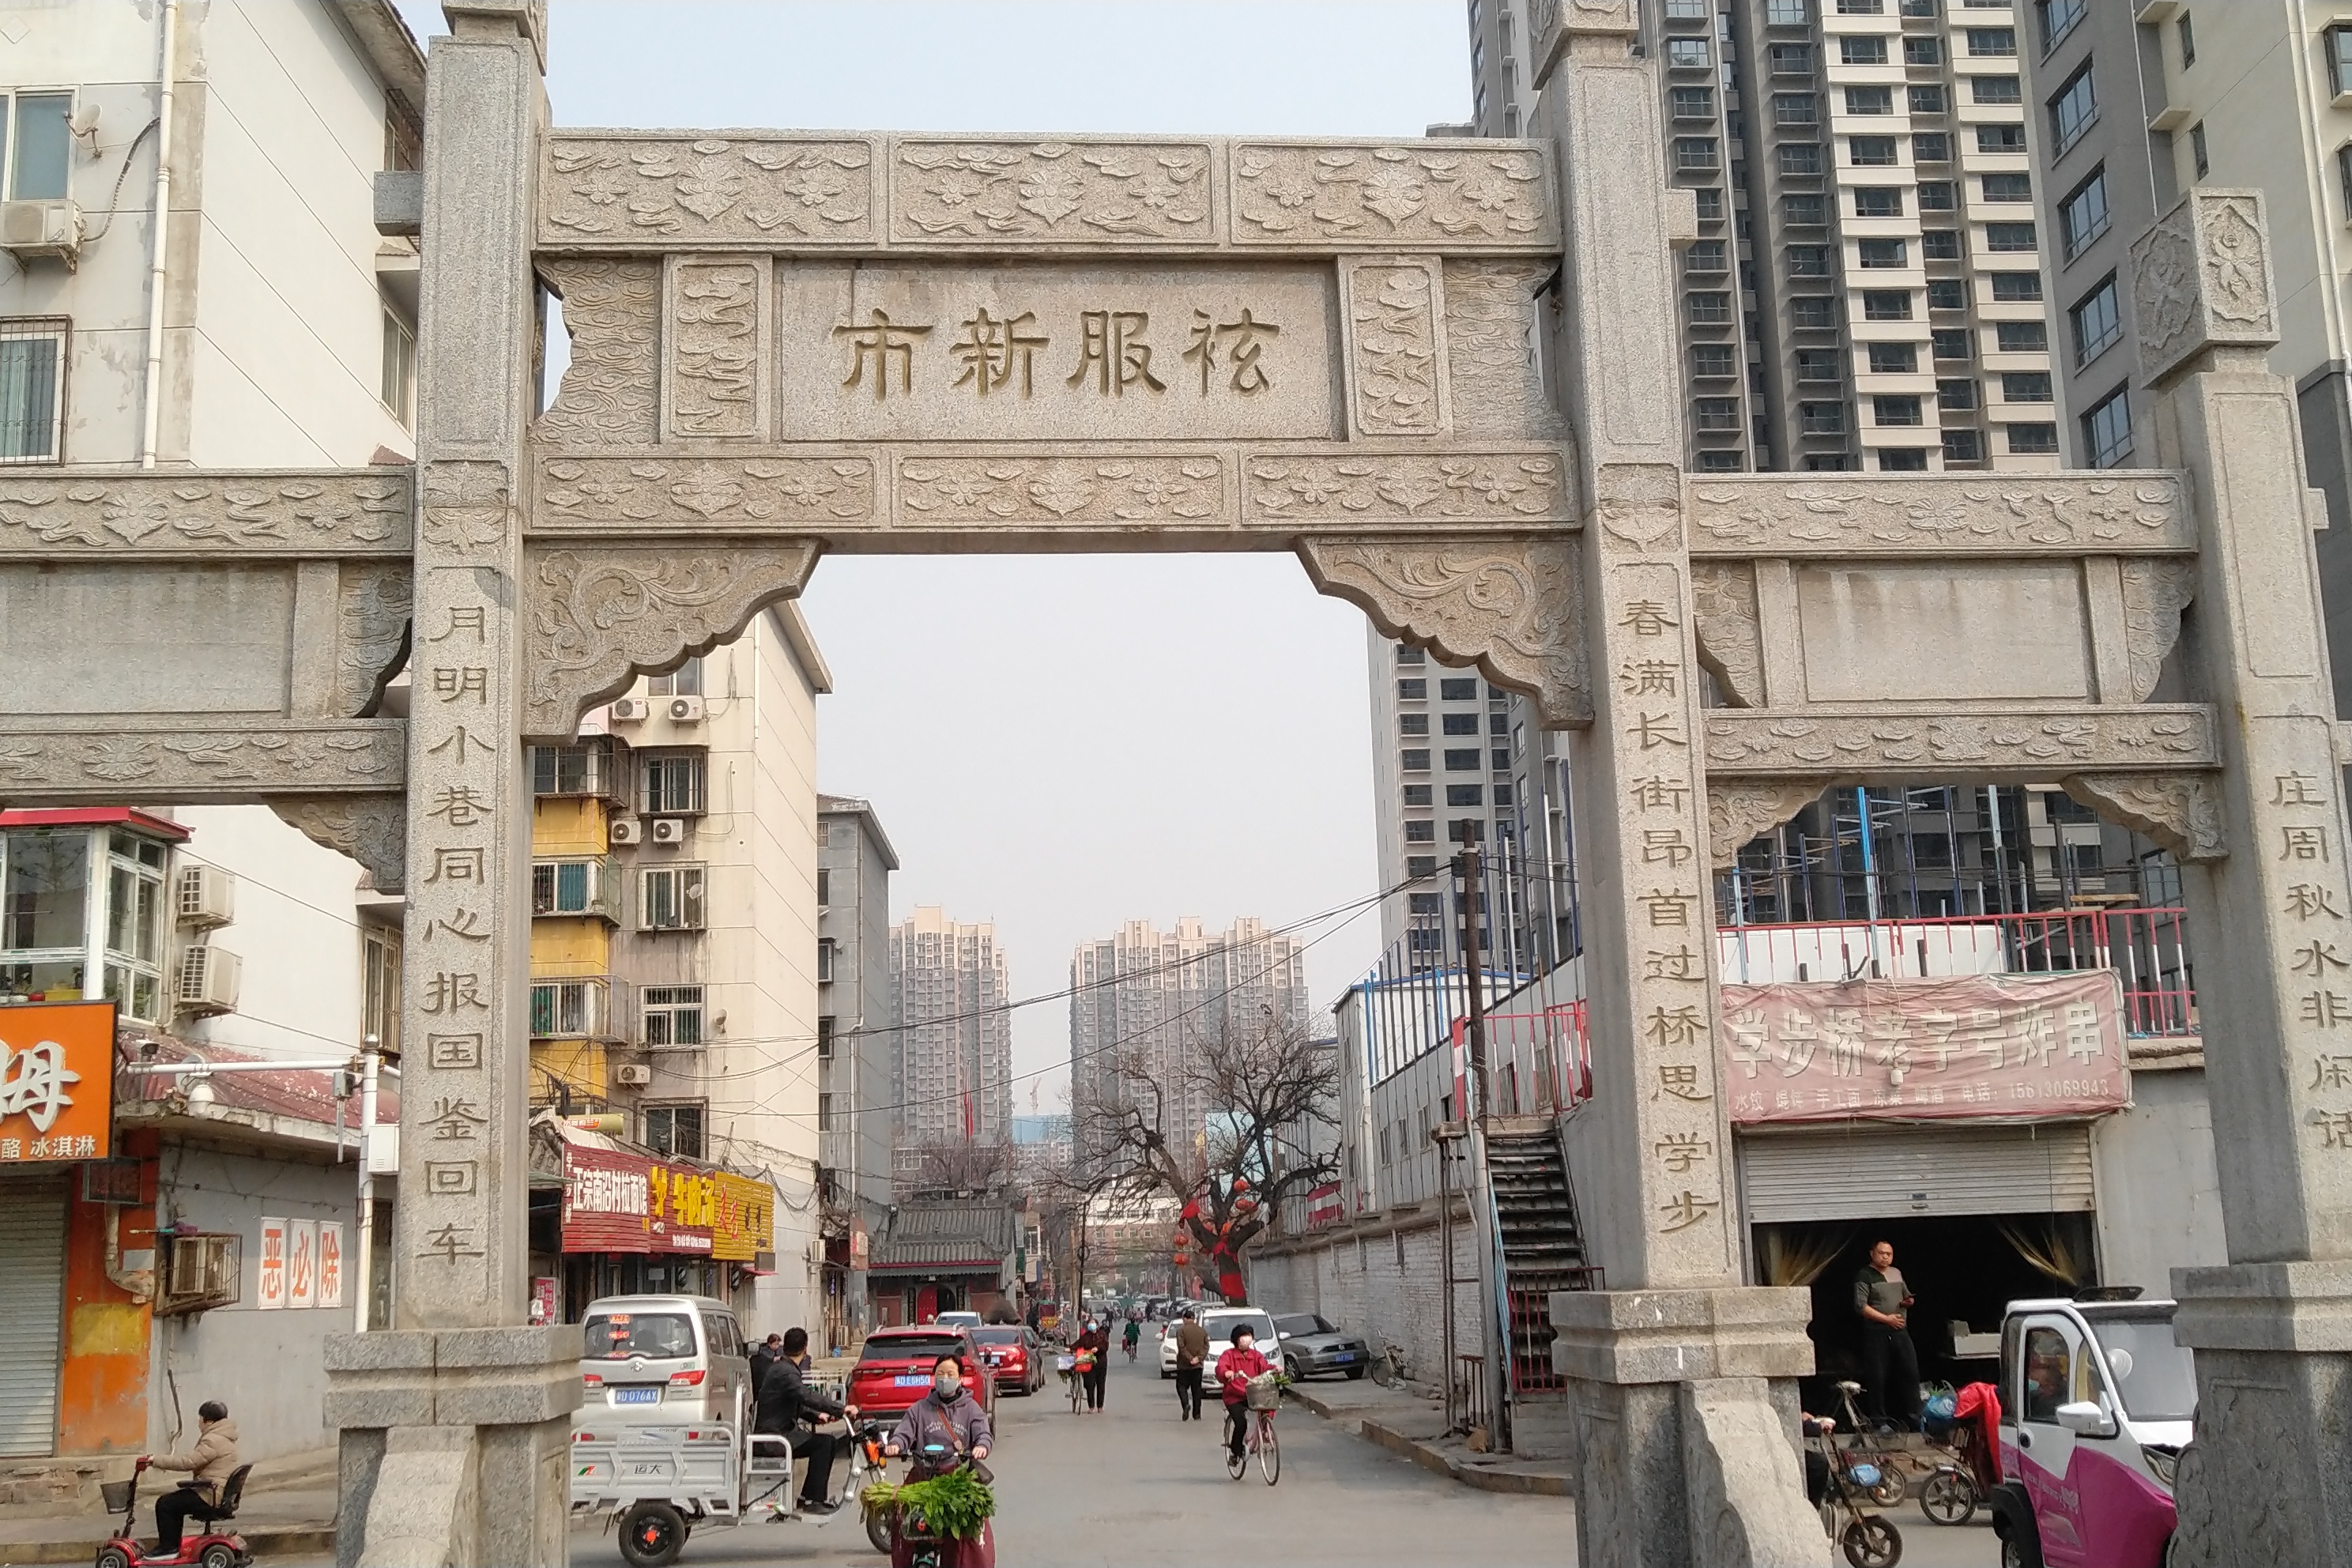 河北邯郸学步桥游记之二,学步桥头古牌坊